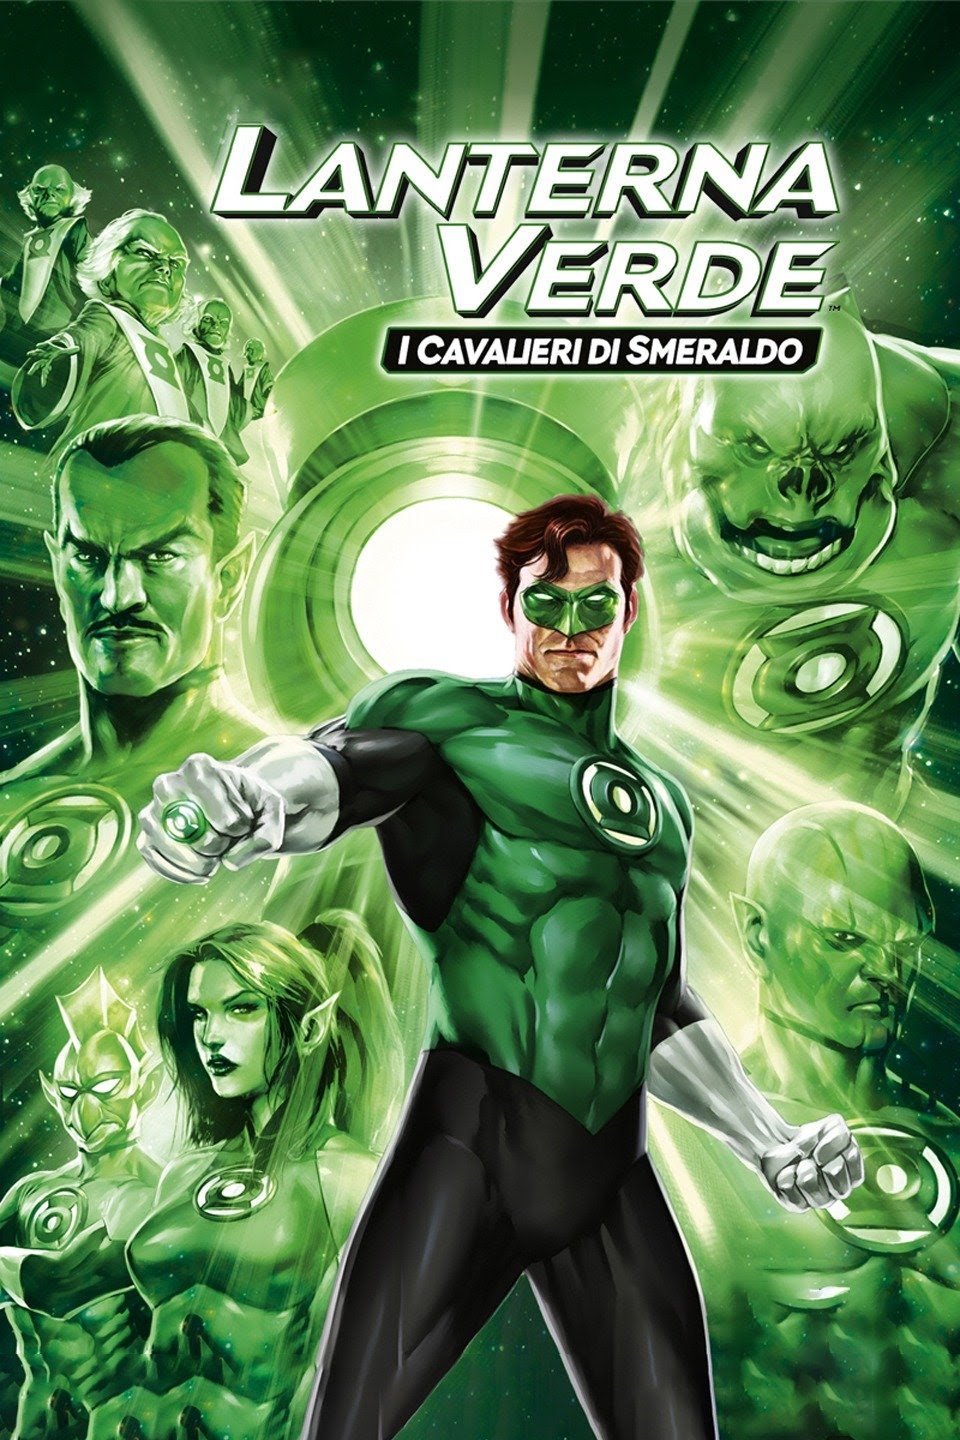 Lanterna Verde – I cavalieri di smeraldo (2011)